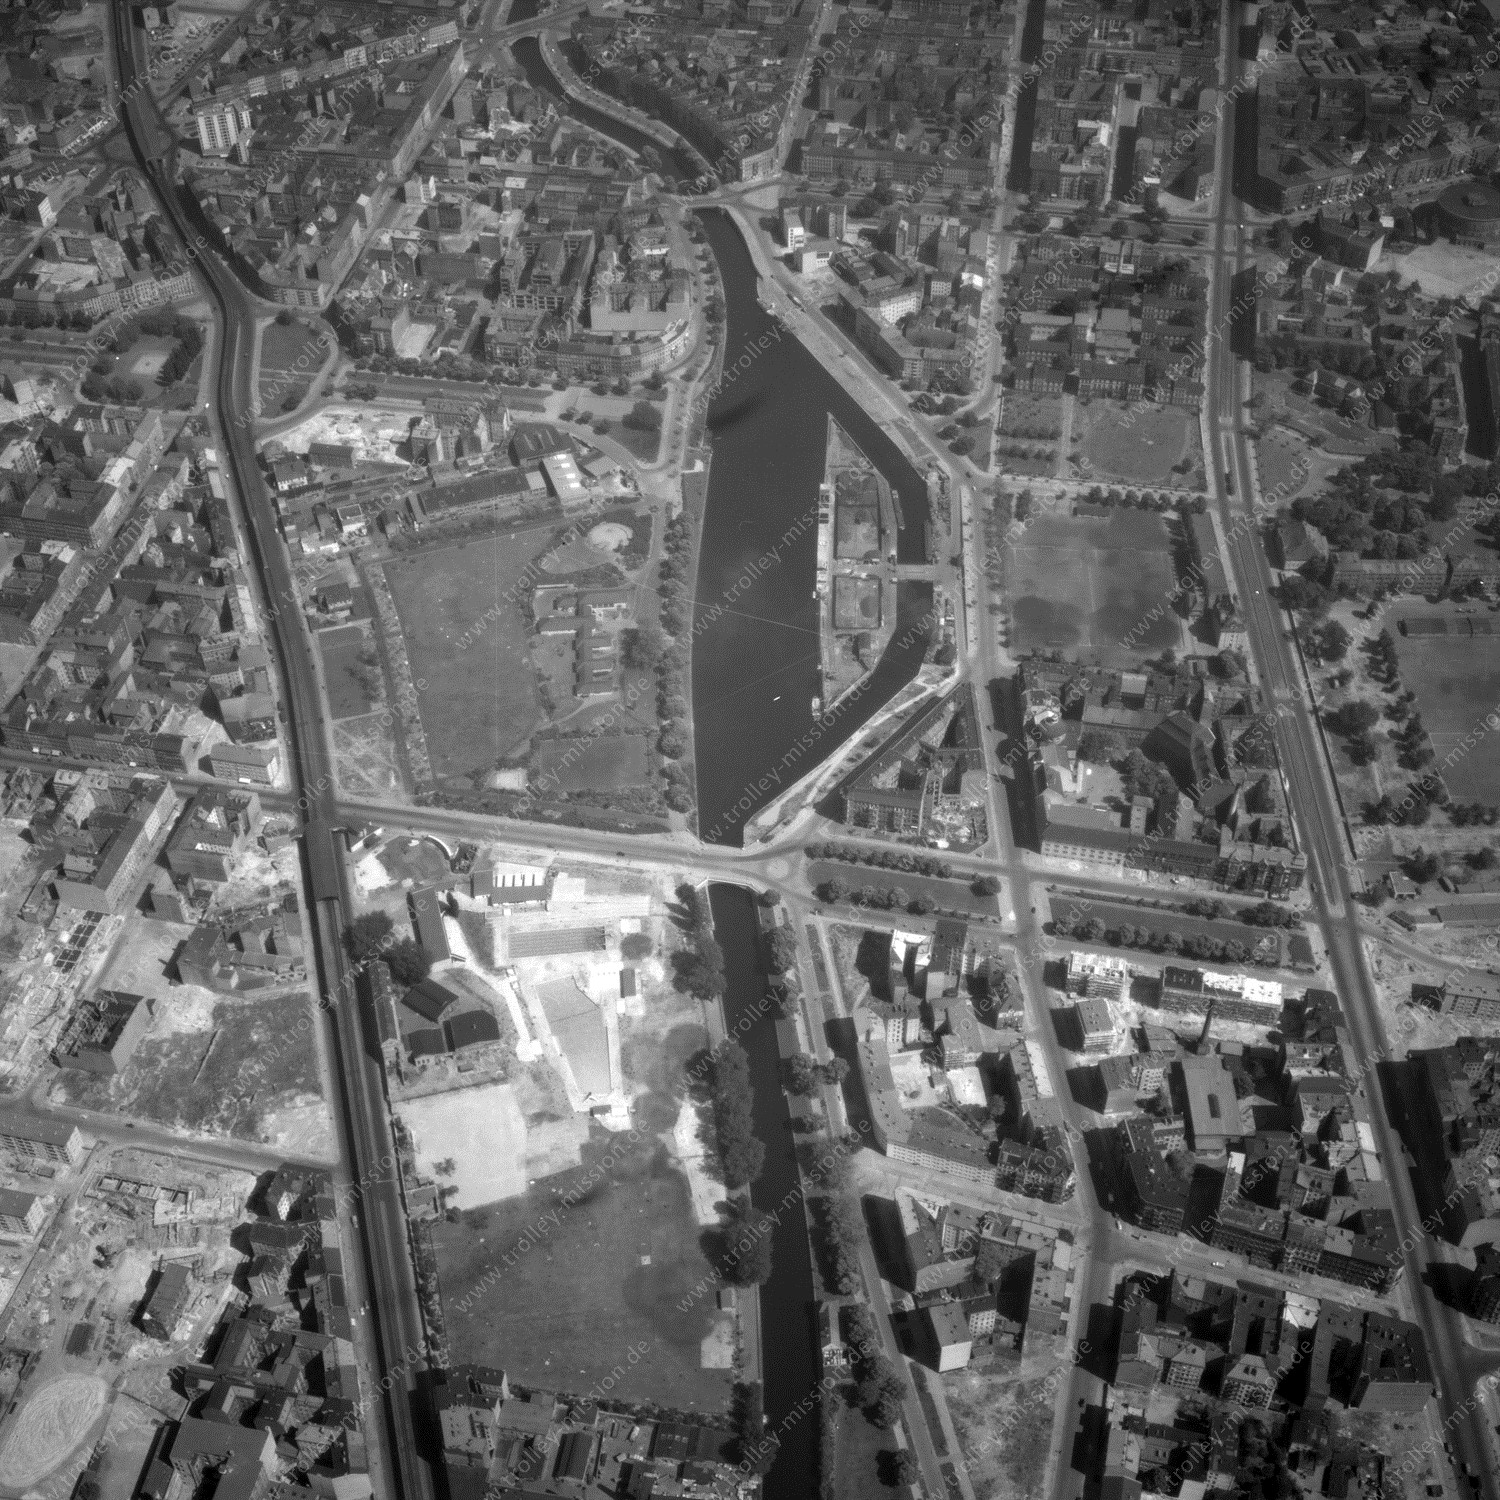 Alte Fotos und Luftbilder von Berlin - Luftbildaufnahme Nr. 06 - Historische Luftaufnahmen von West-Berlin aus dem Jahr 1954 - Flugstrecke Kilo